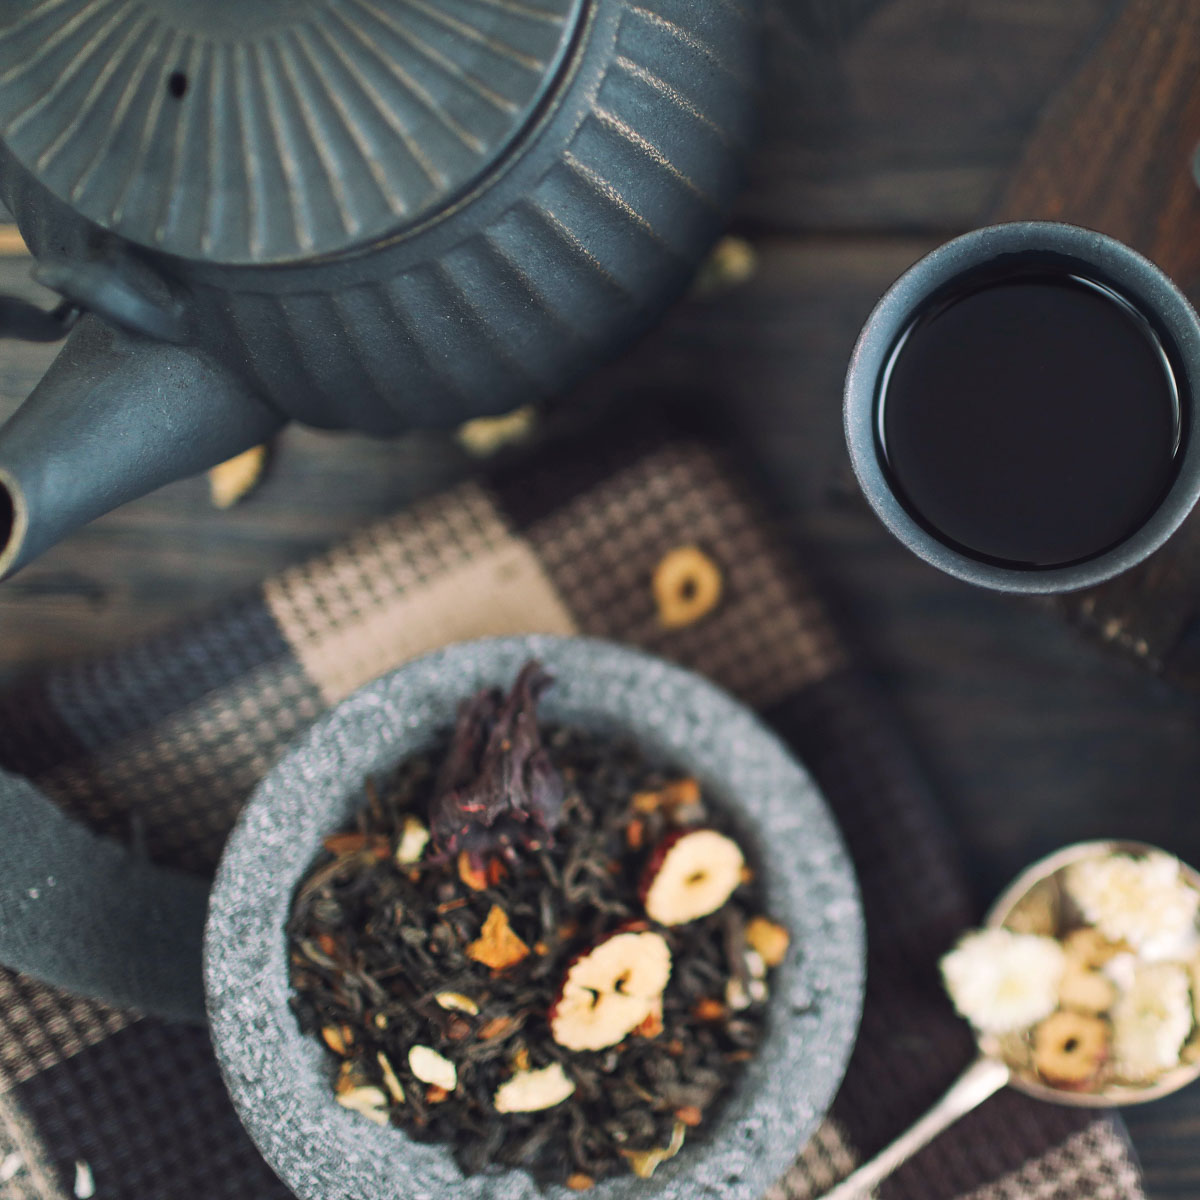 tea pot and cup with loose leaf pu-erh tea